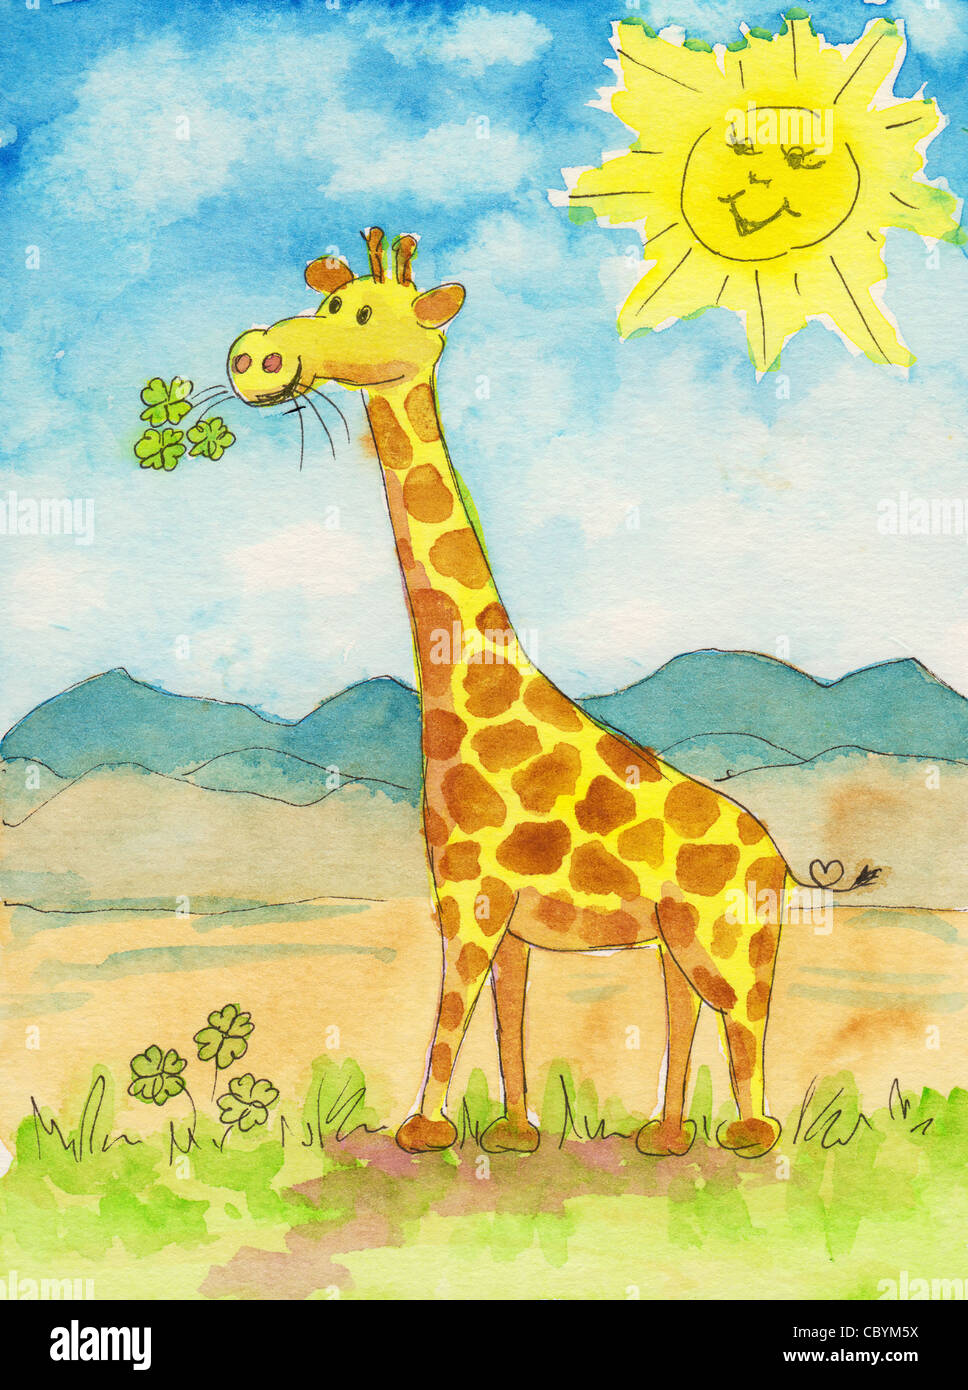 Рисование жирафа в старшей группе